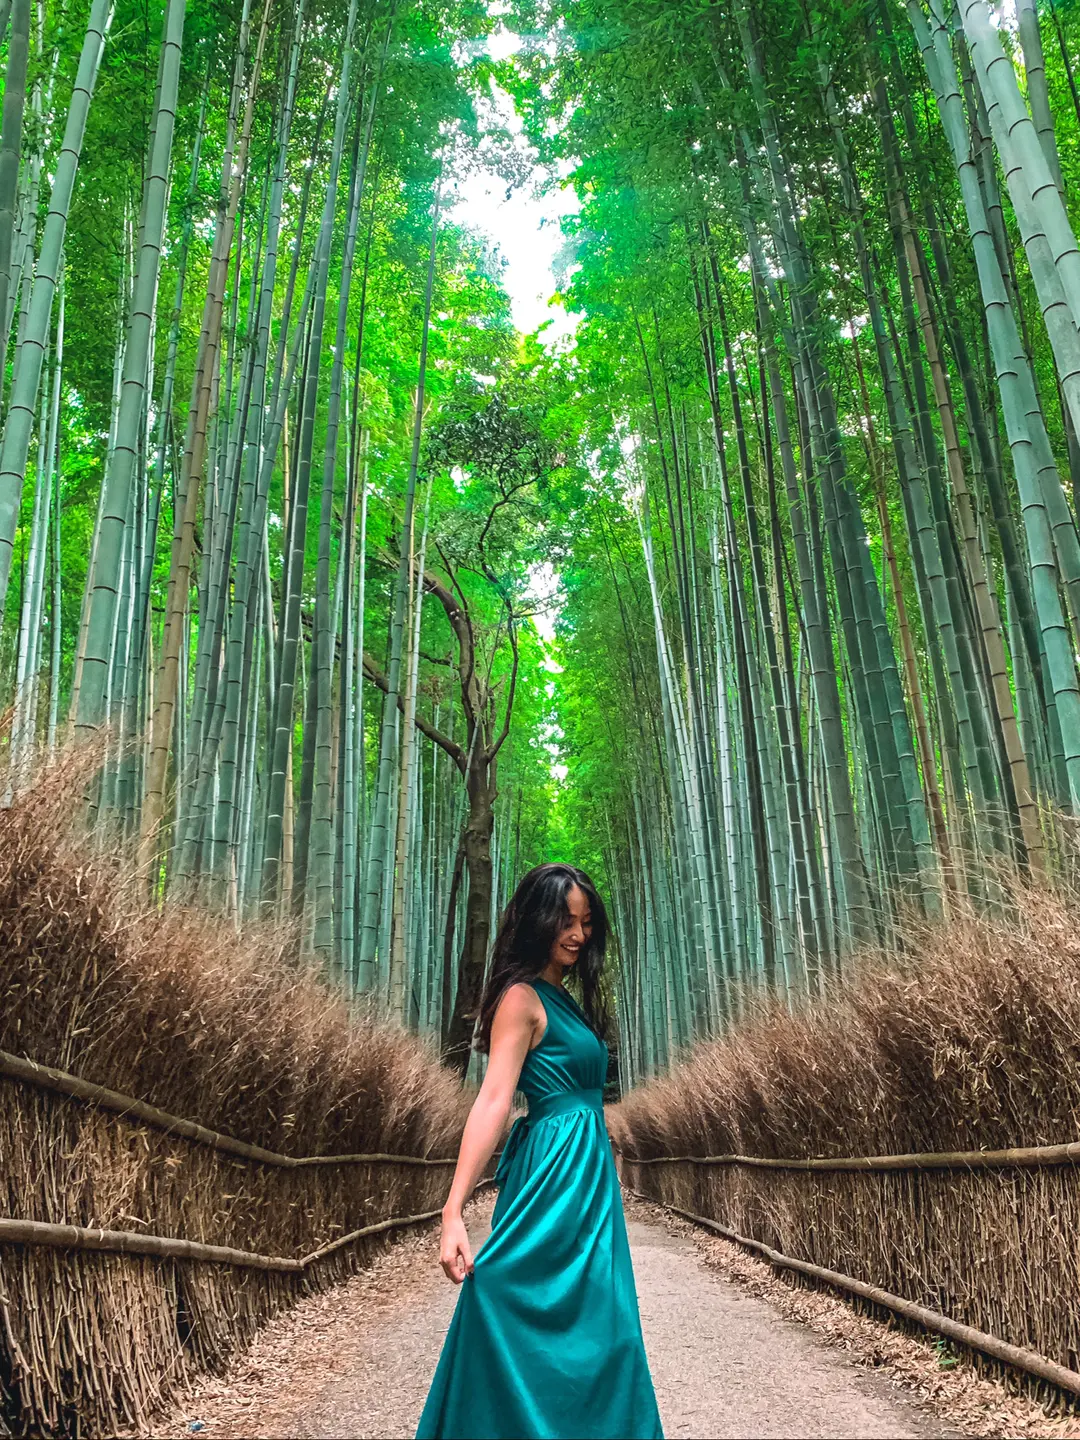 観光客の多い京都で人が映り込まない写真を撮るコツ‼︎ in 竹林の小径の画像